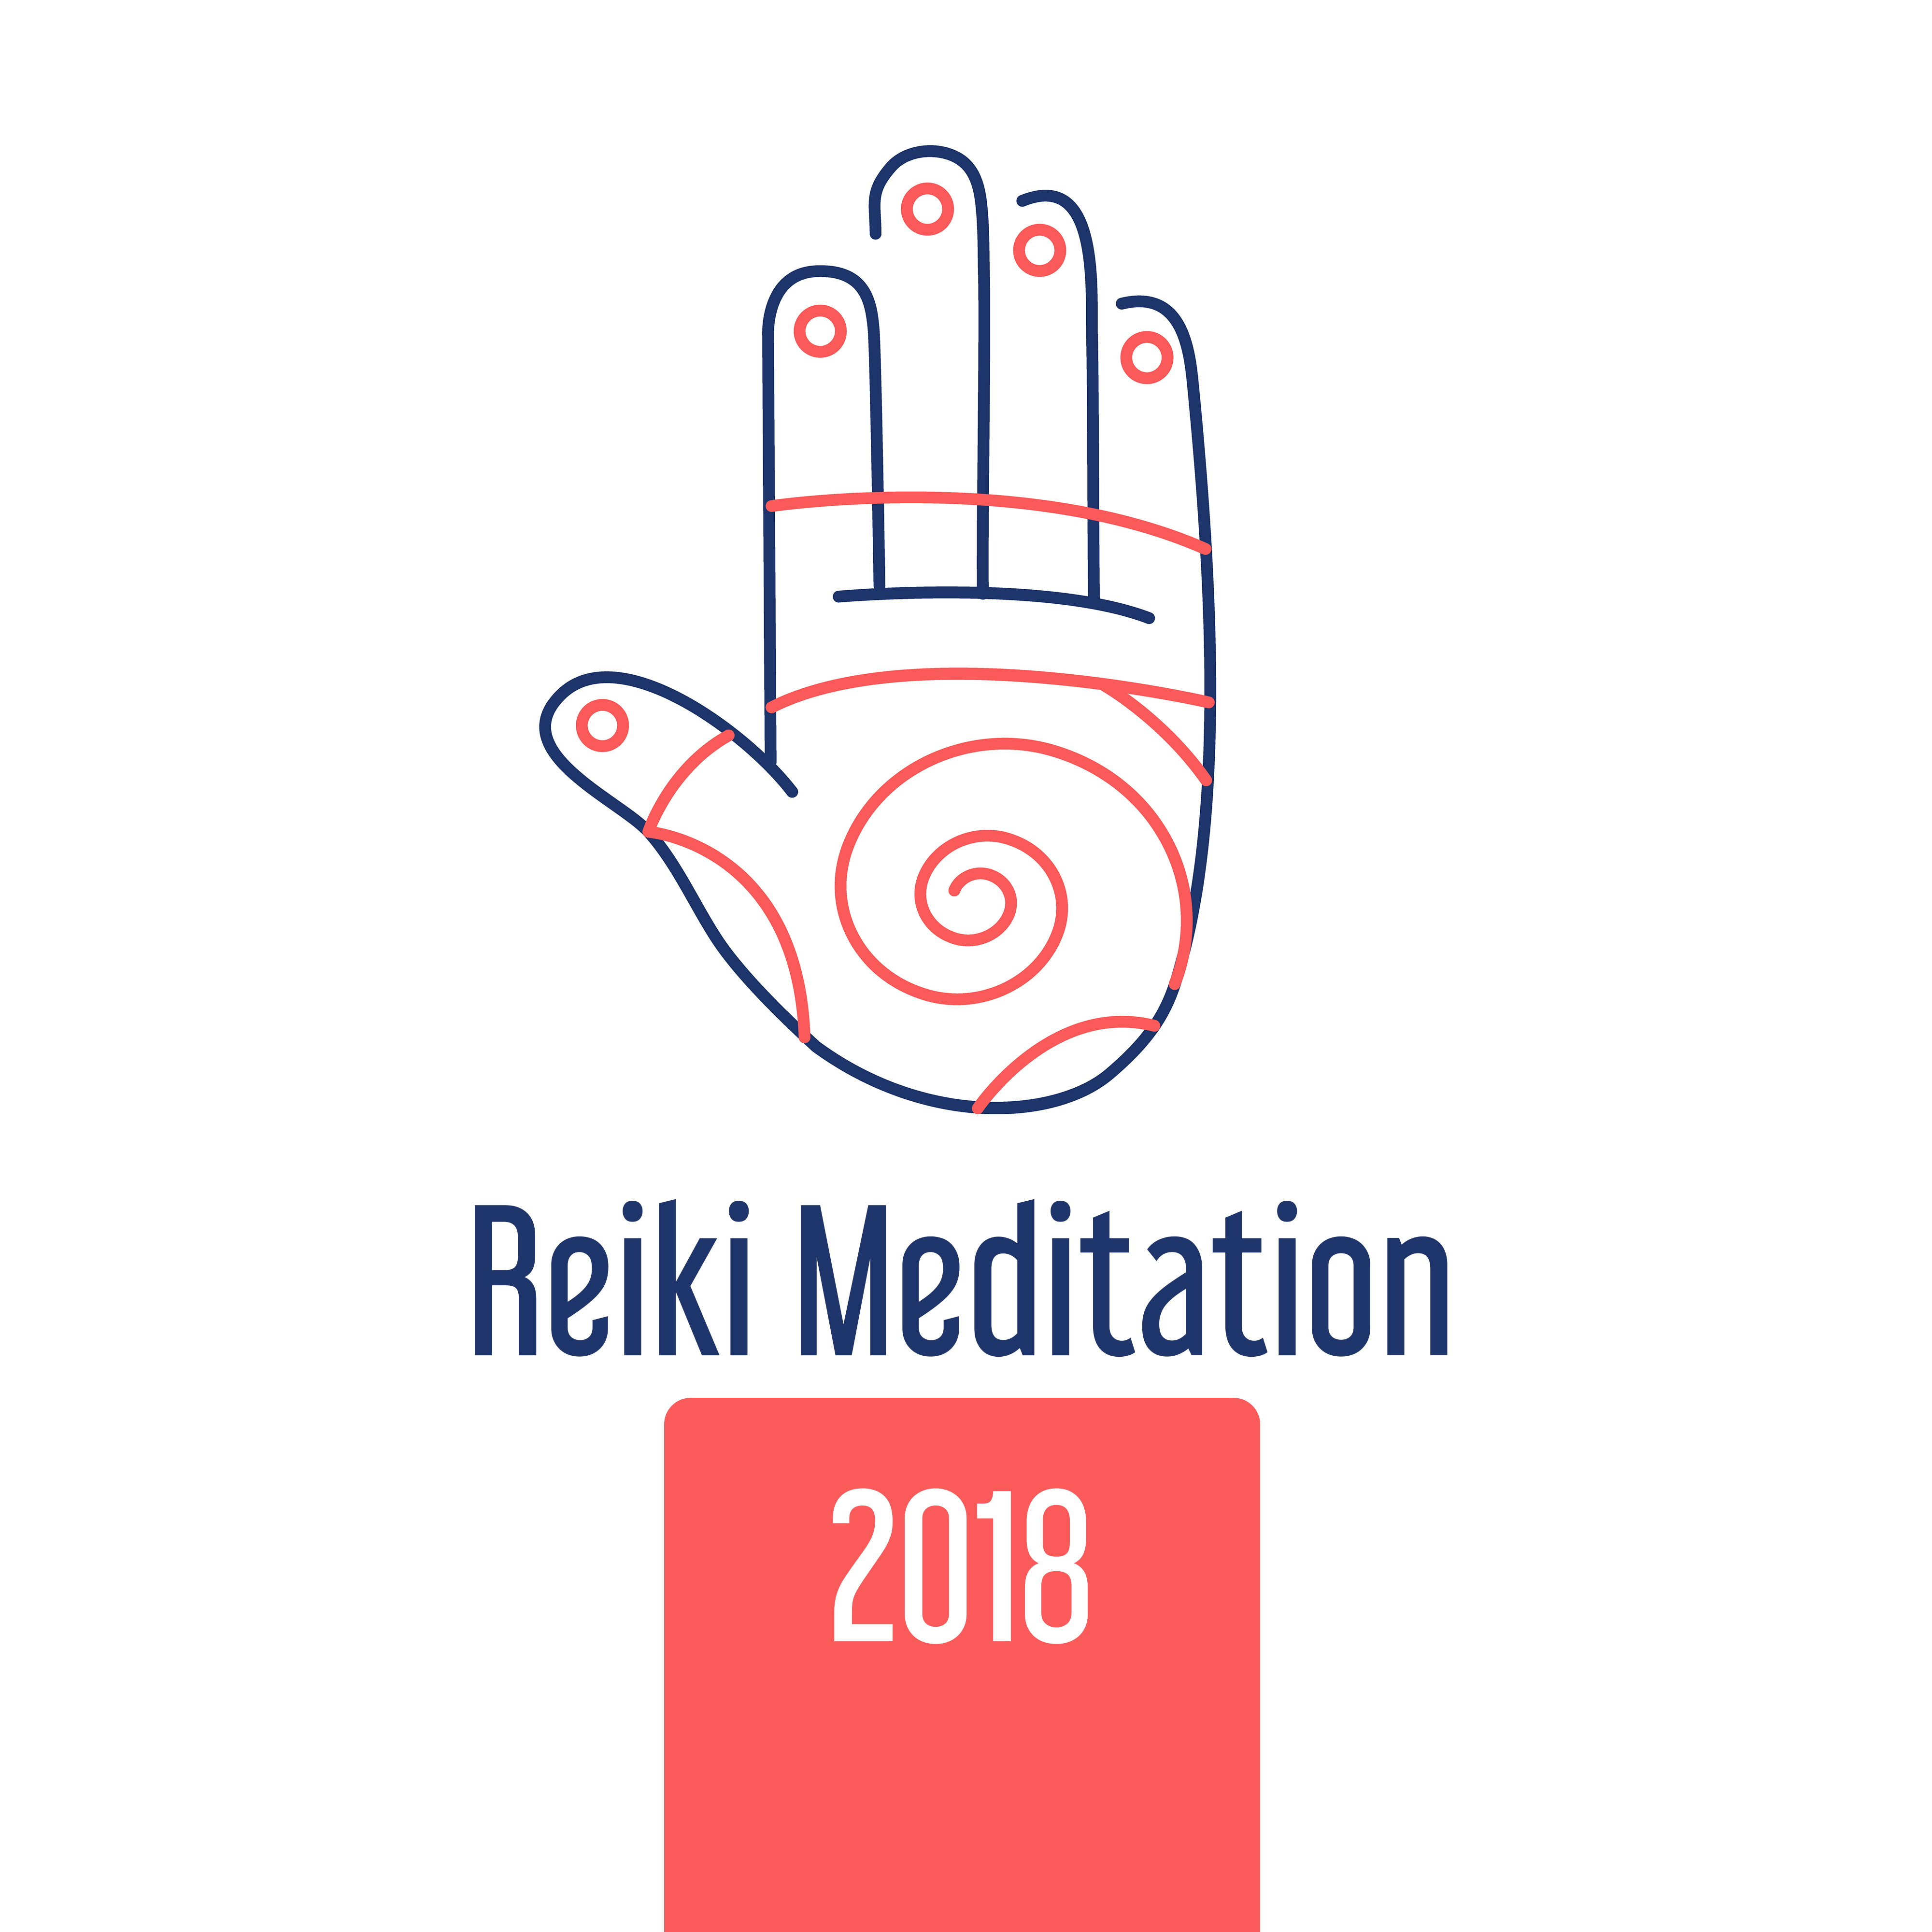 Reiki Meditation 2018